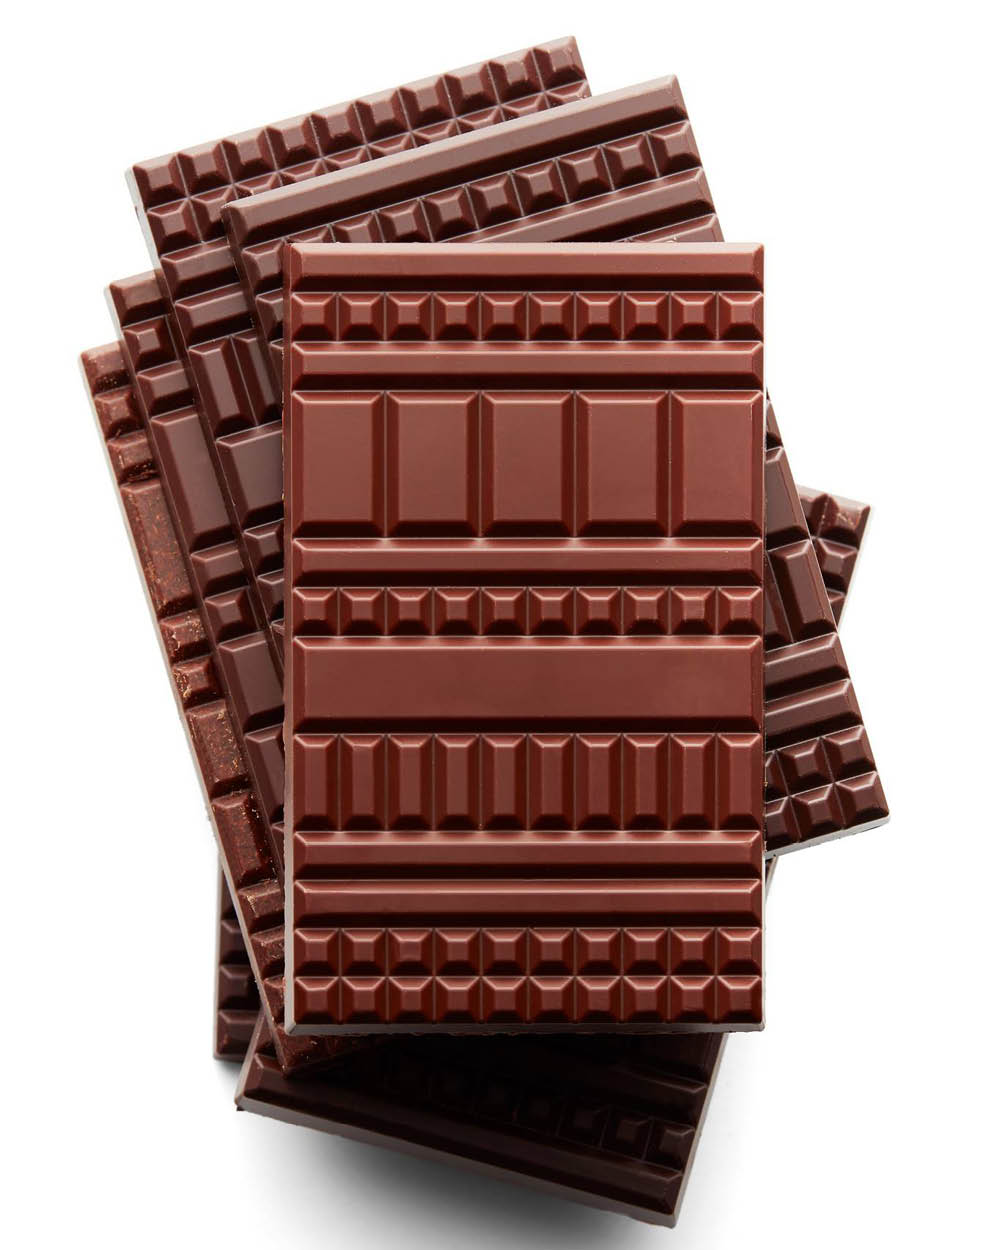 La Chocolat Alain Ducasse: lar dos maiores especialistas franceses em chocolate